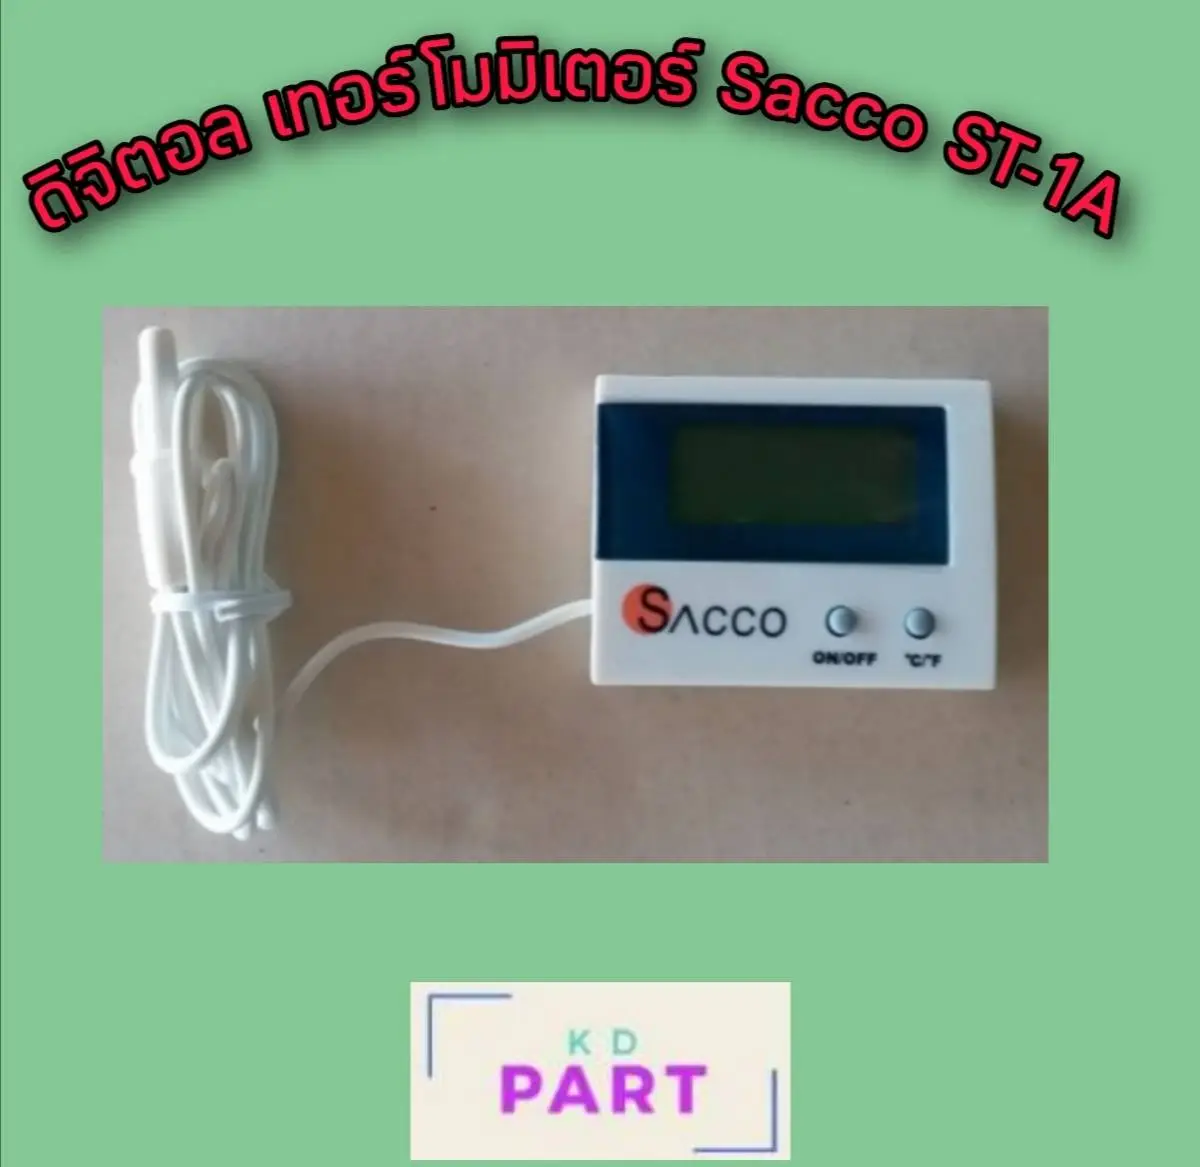 ดิจิตอล เทอรโมมิเตอร์ ขนาดเล็ก Digital Thermometer เครื่องวัดอุณหภูมิ Sacco ST-1A